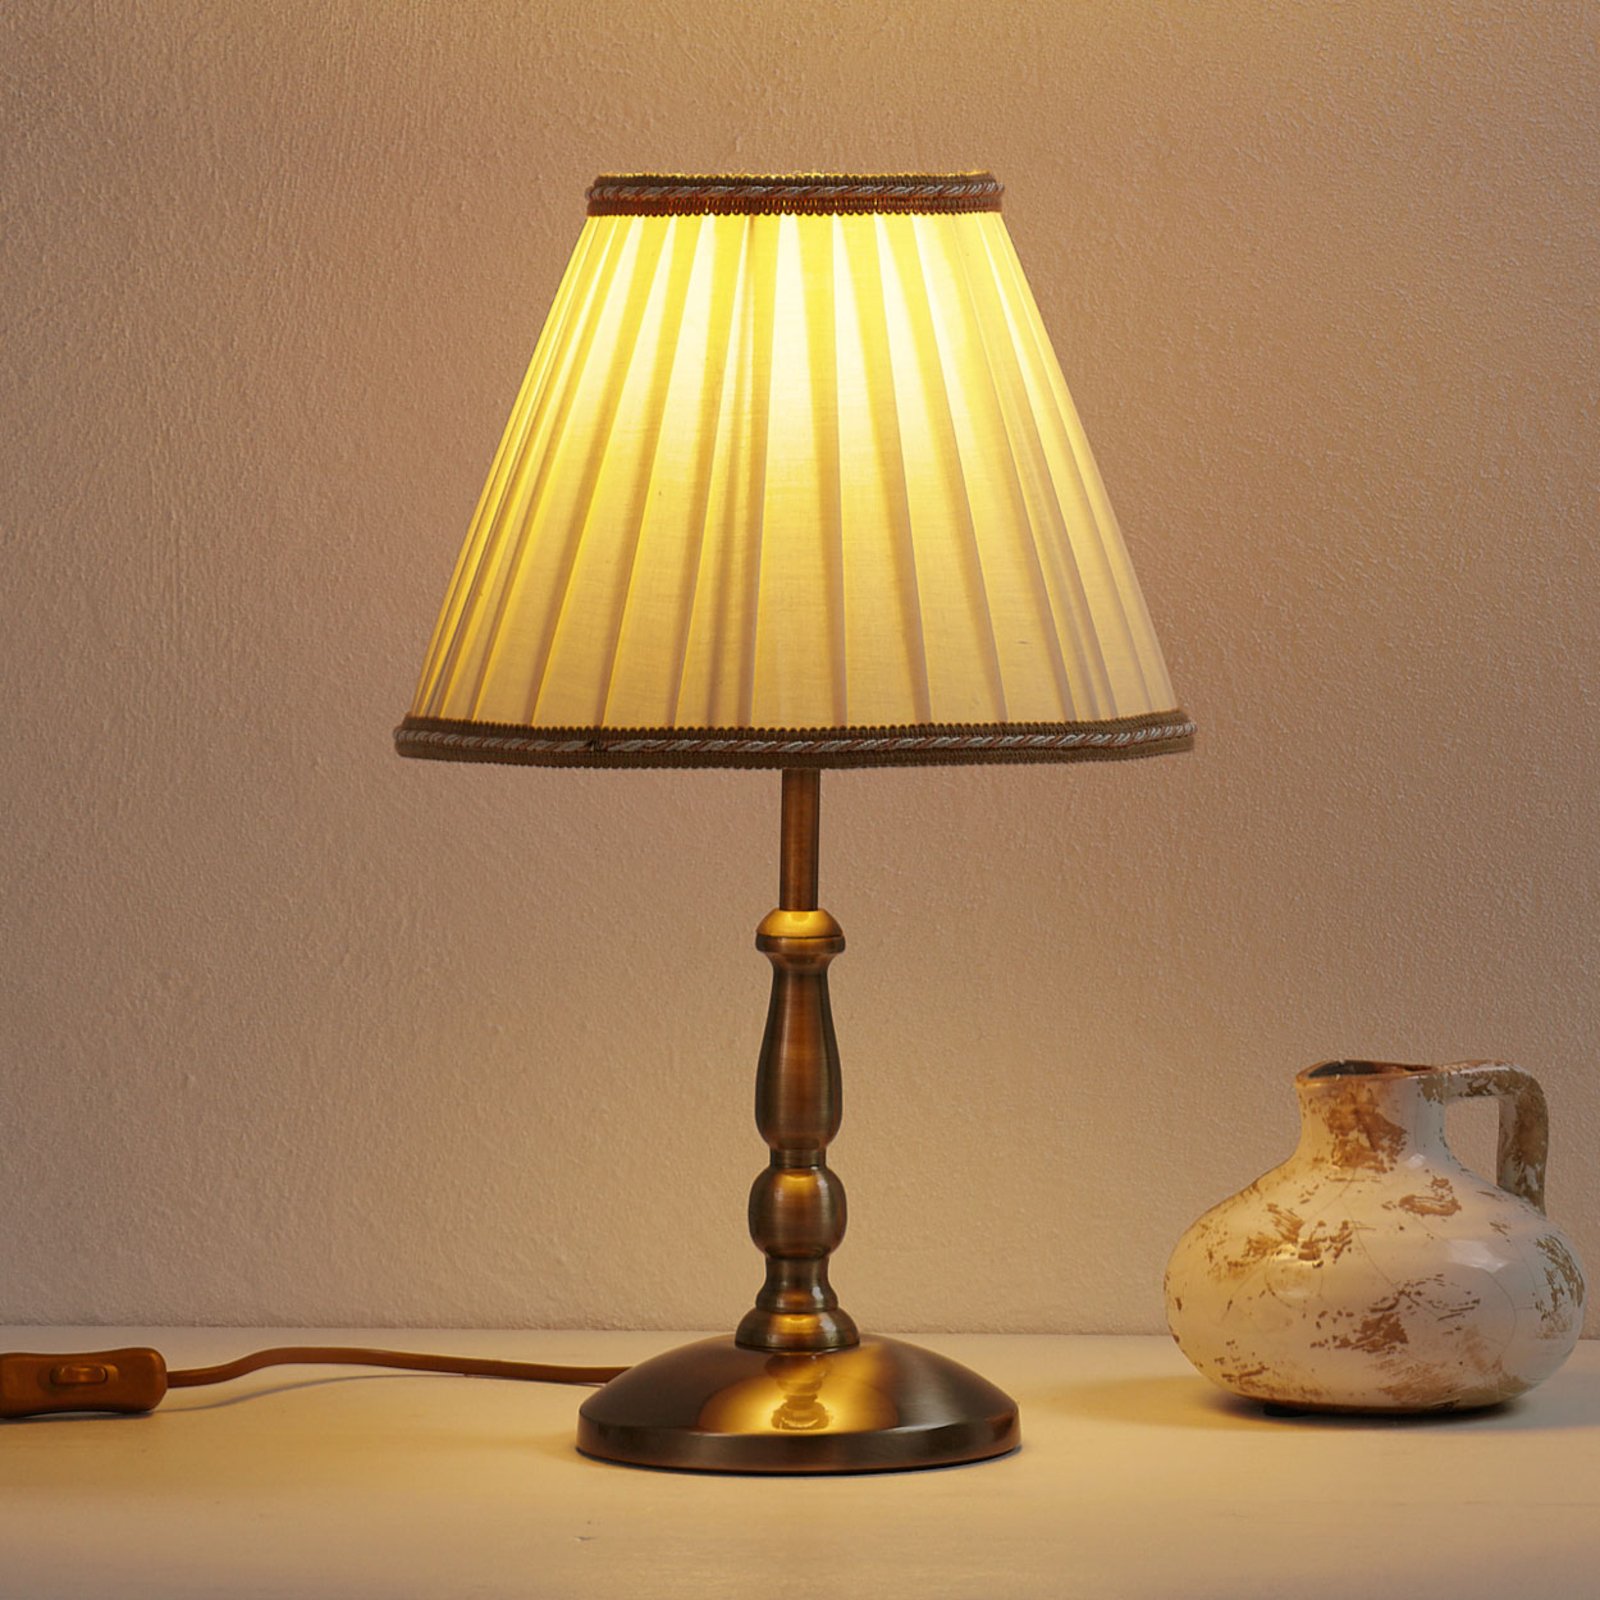 Rosella Table Light Elegant 40 cm High